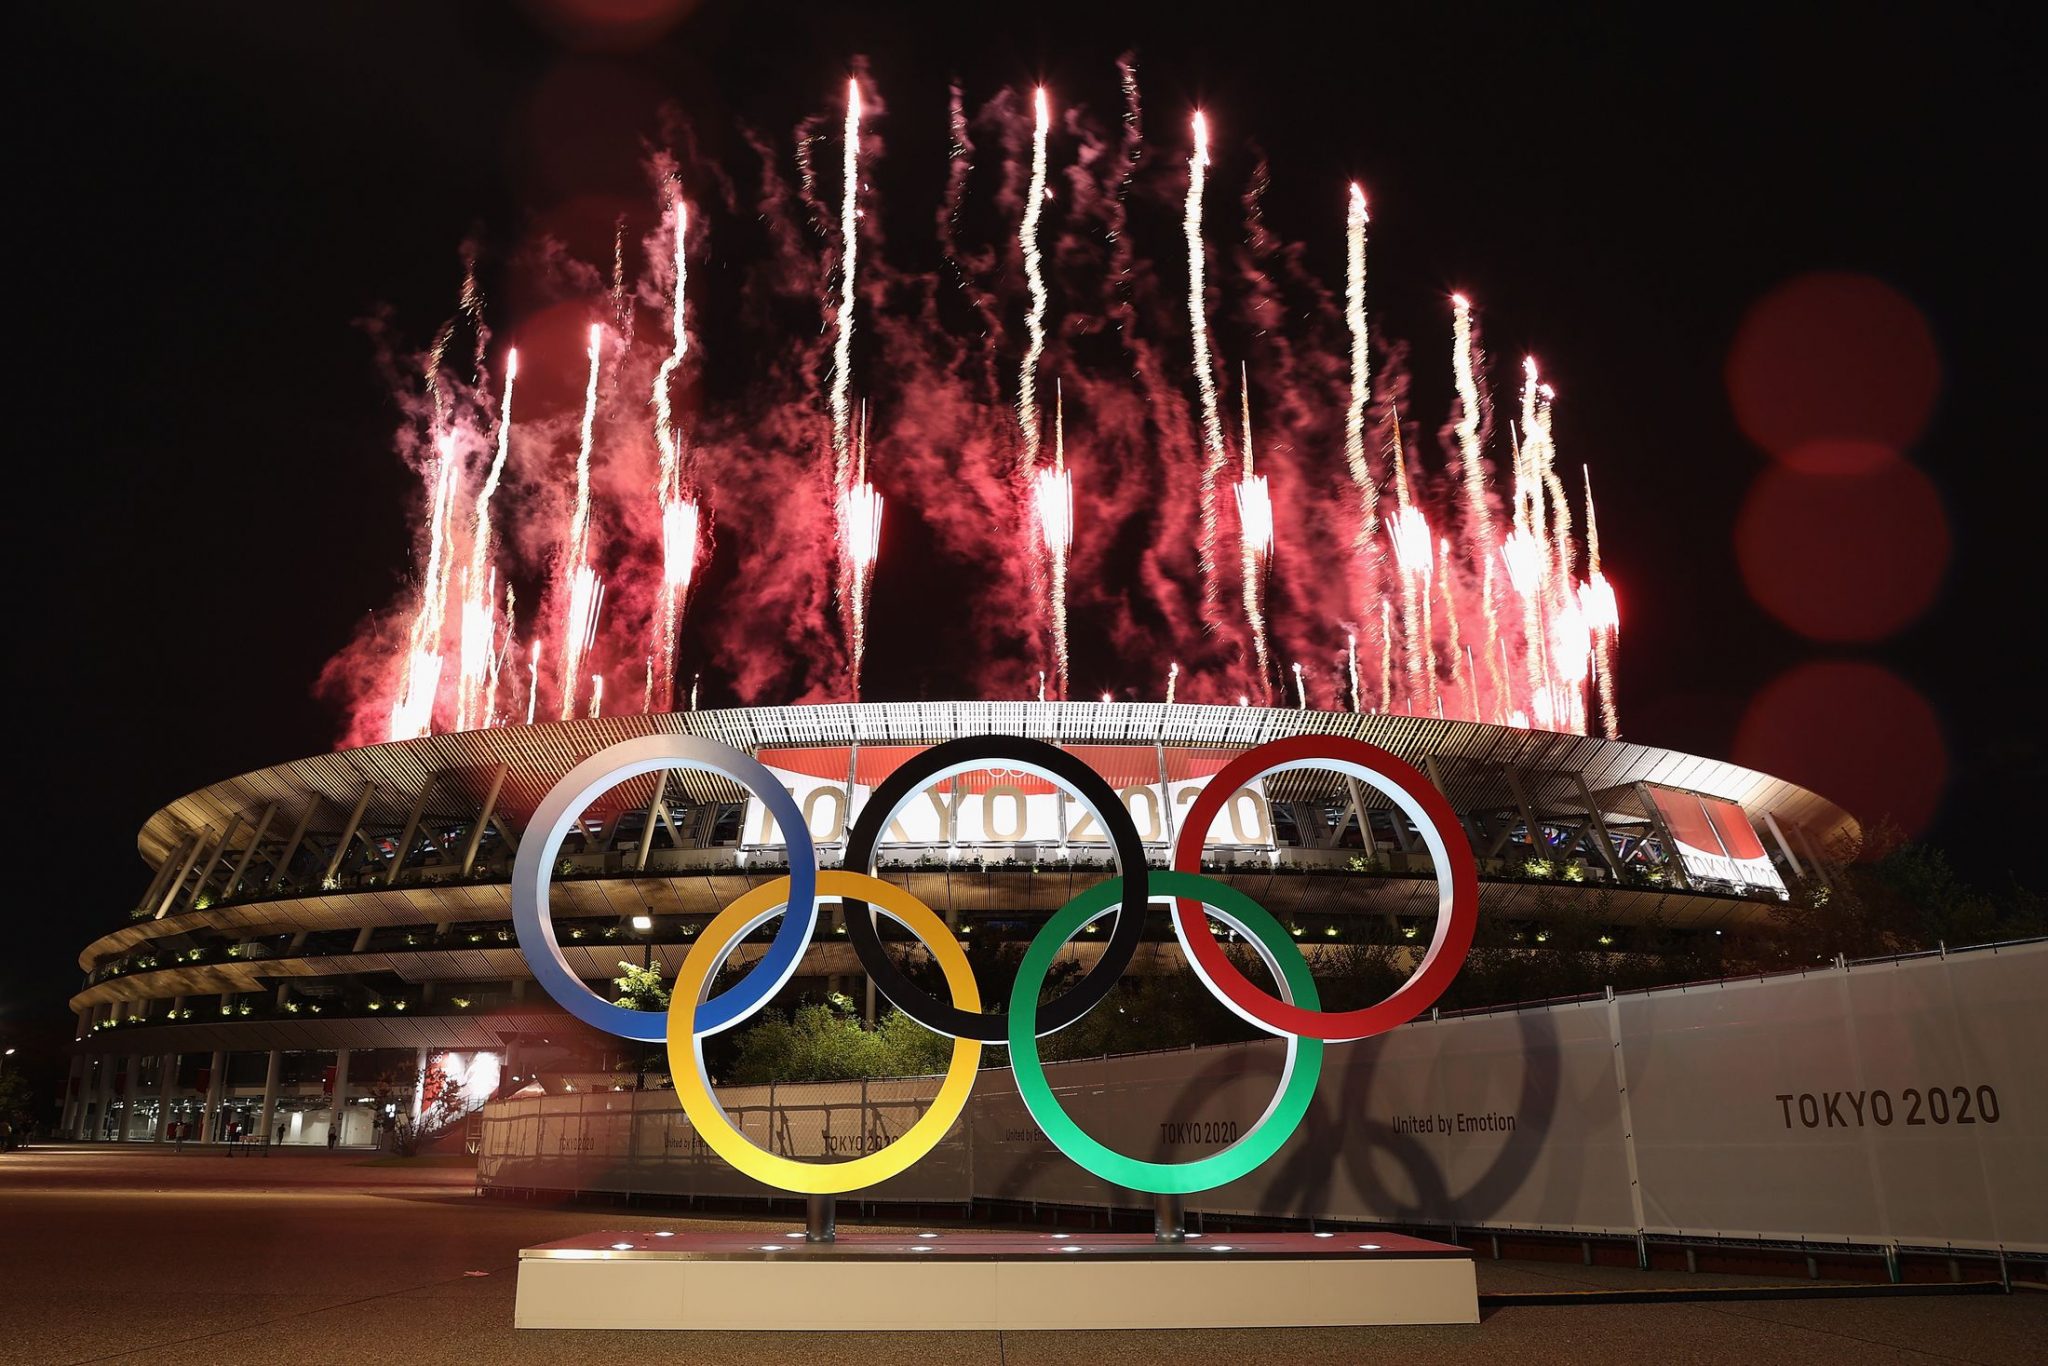 Օլիմպիական խաղերի մեդալների ցանկն՝ ըստ երկրների․Քանի՞ մեդալ ունի Հայաստանը